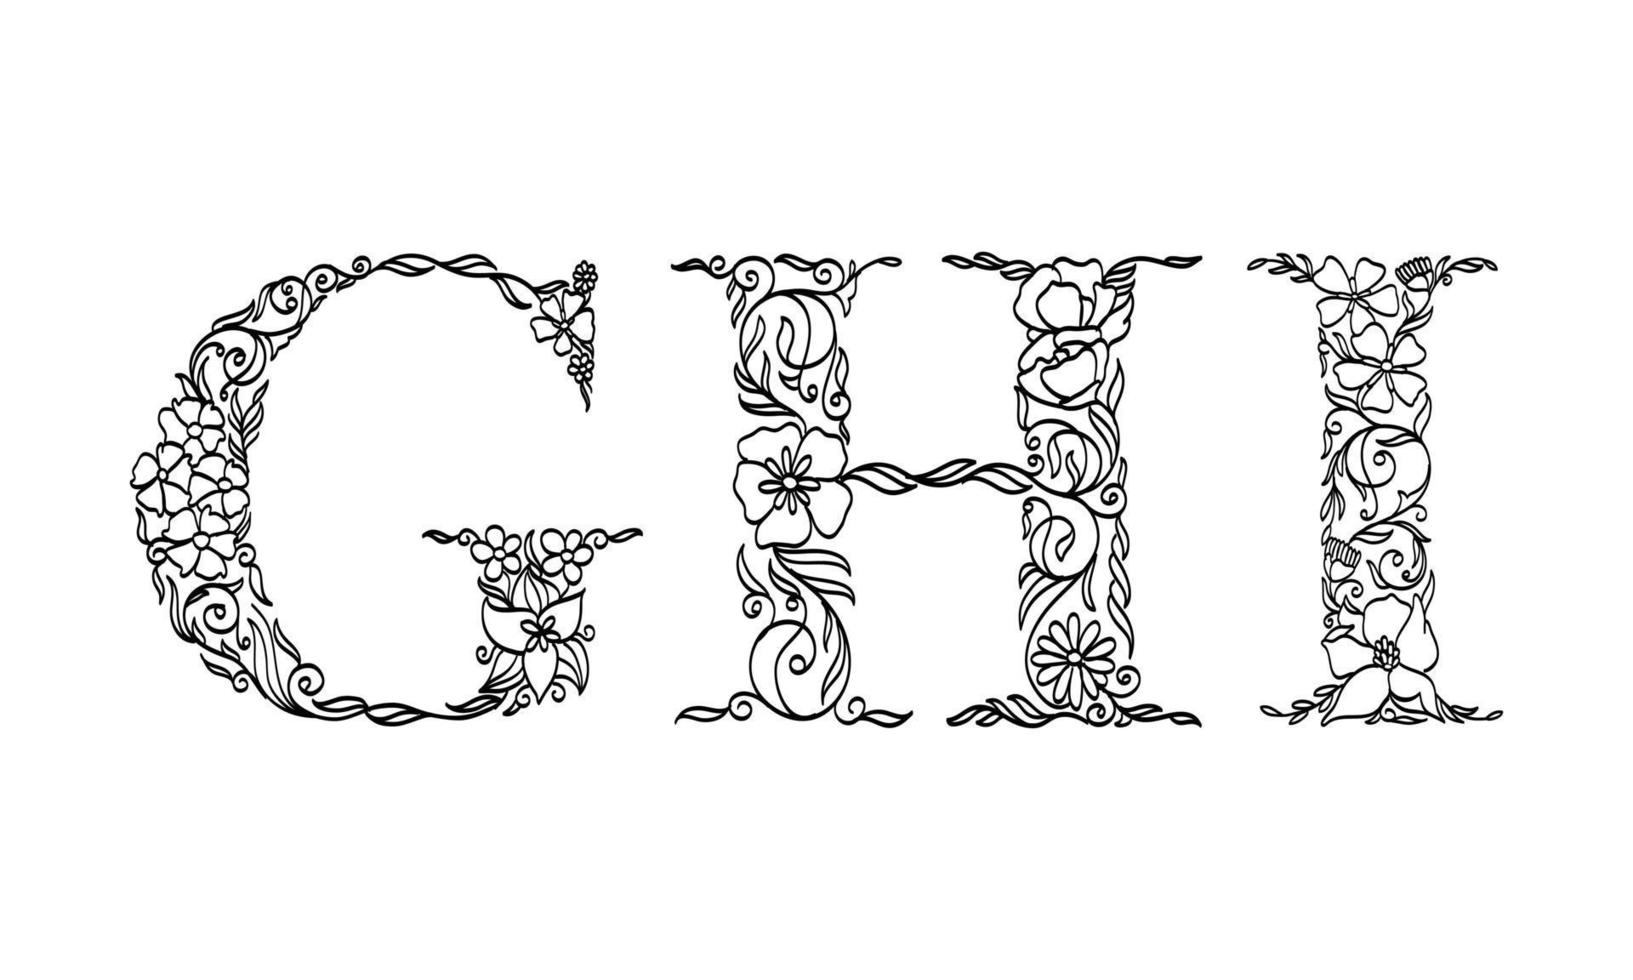 blommig illustration alfabetet g, h, i, vektorgrafiskt teckensnitt gjorda av blom- och bladväxt kreativa handritade streckteckningar för abstrakta och naturliga naturstilar i unik monokrom designdekoration vektor